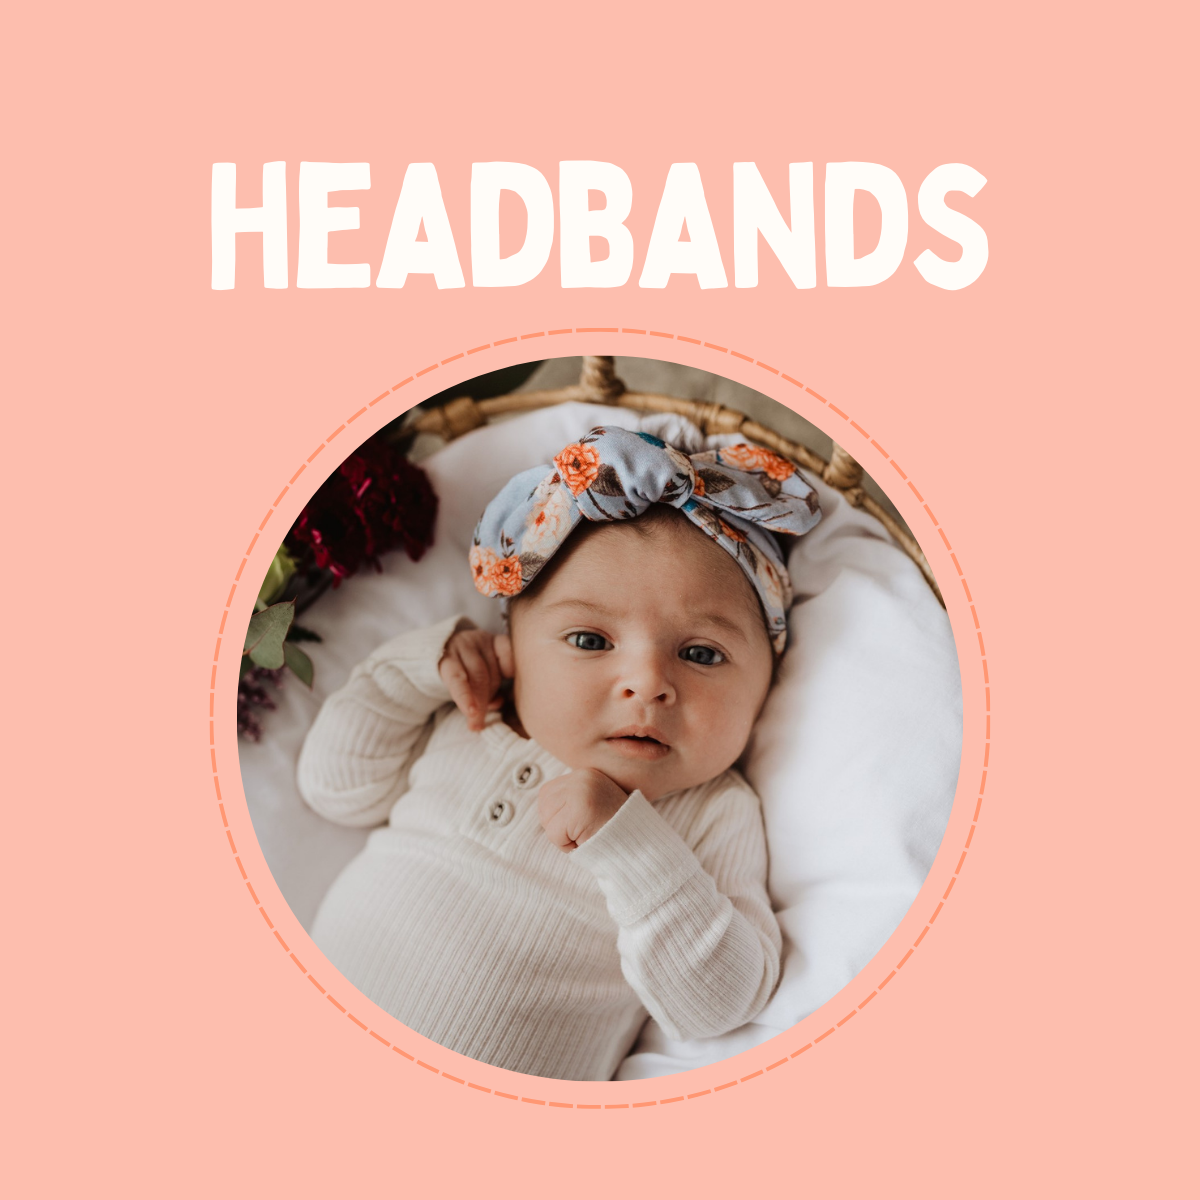 Headbands